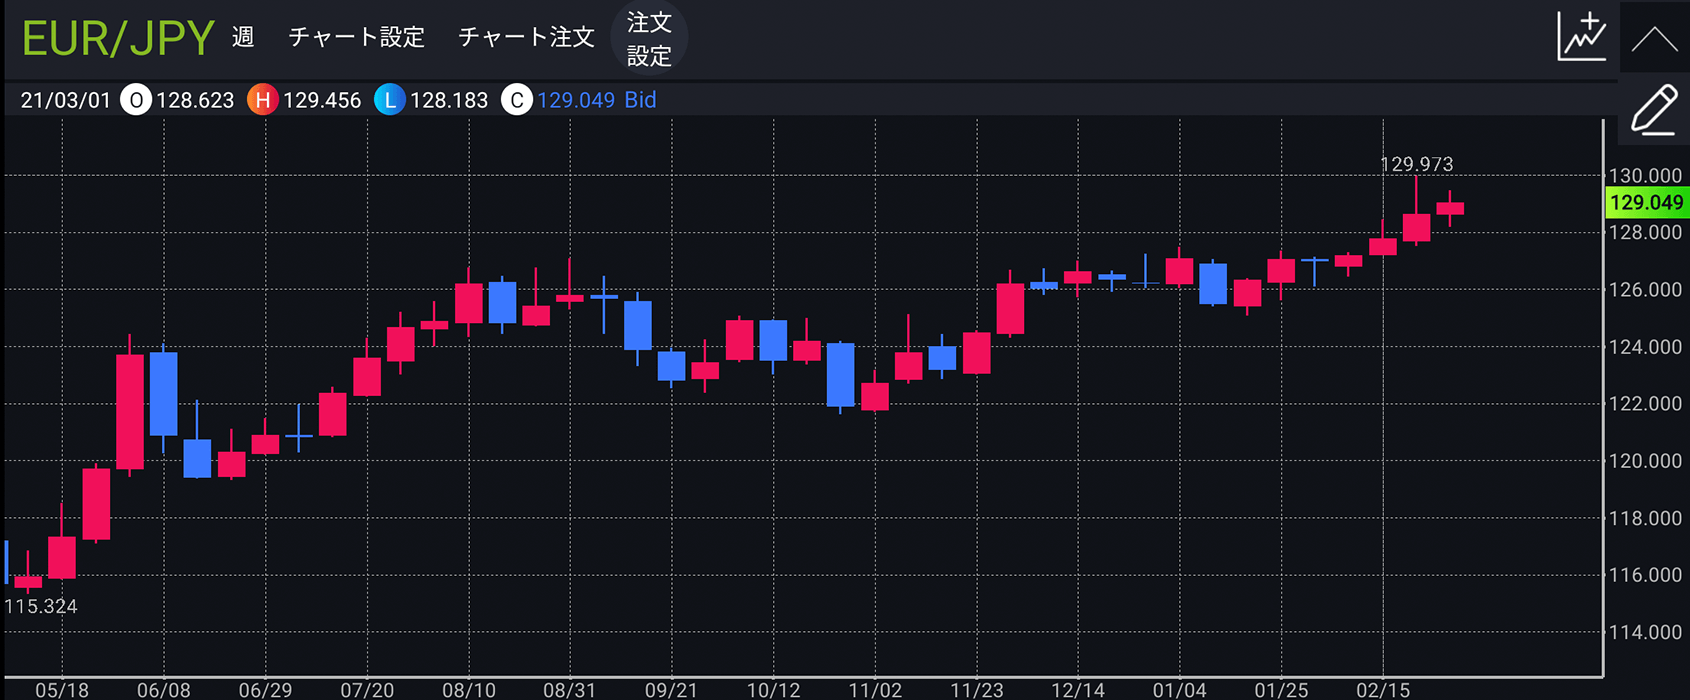 ユーロ/円 週足のチャート画像